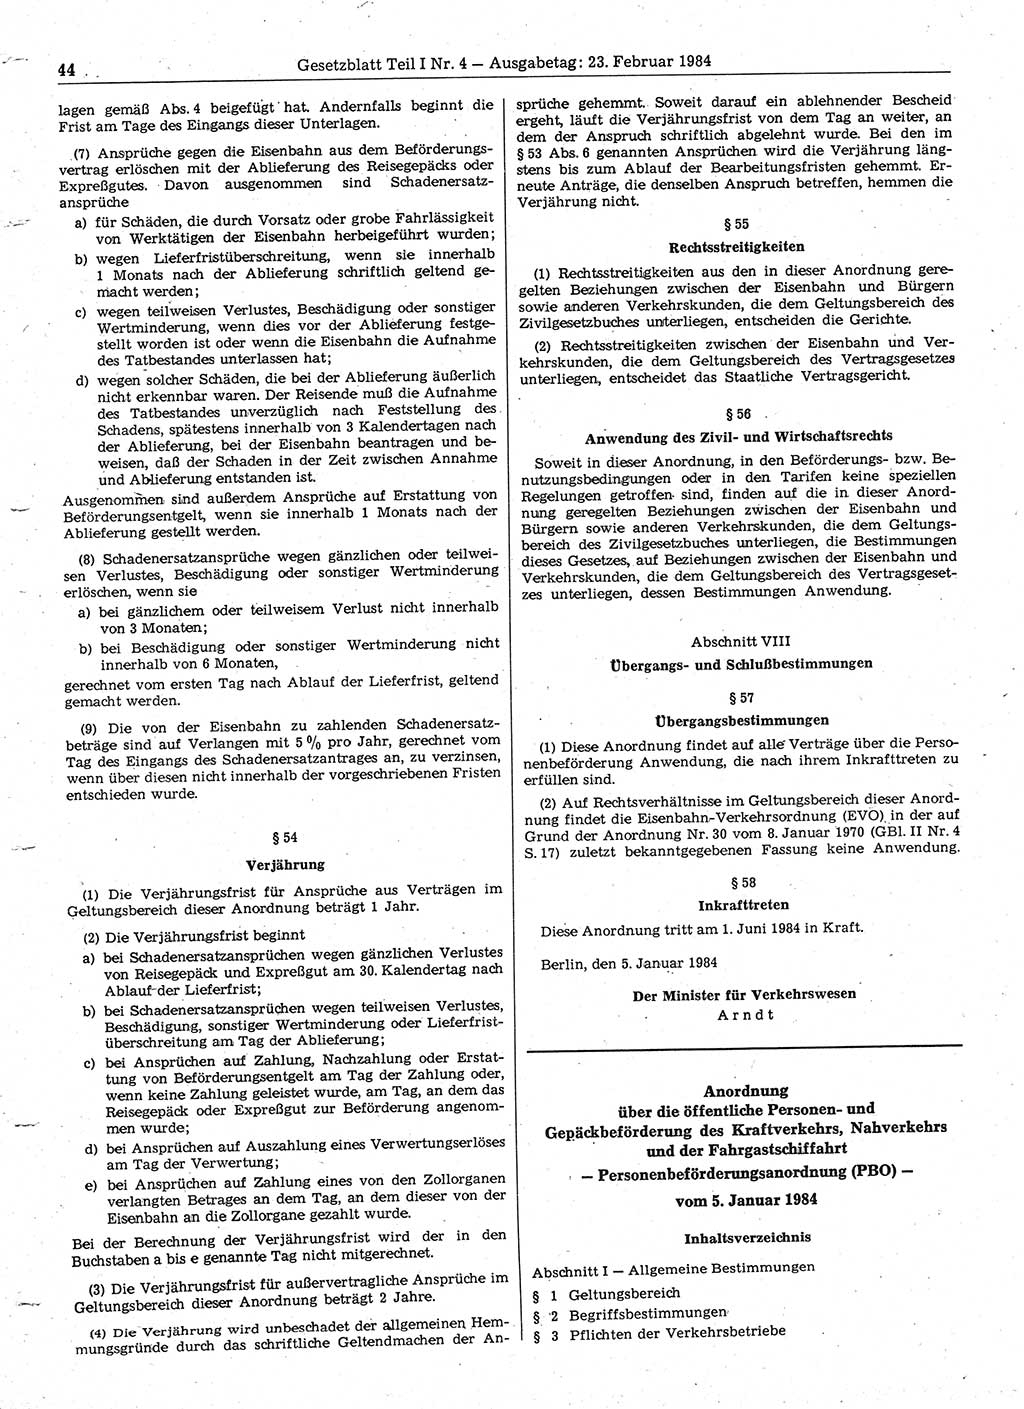 Gesetzblatt (GBl.) der Deutschen Demokratischen Republik (DDR) Teil Ⅰ 1984, Seite 44 (GBl. DDR Ⅰ 1984, S. 44)